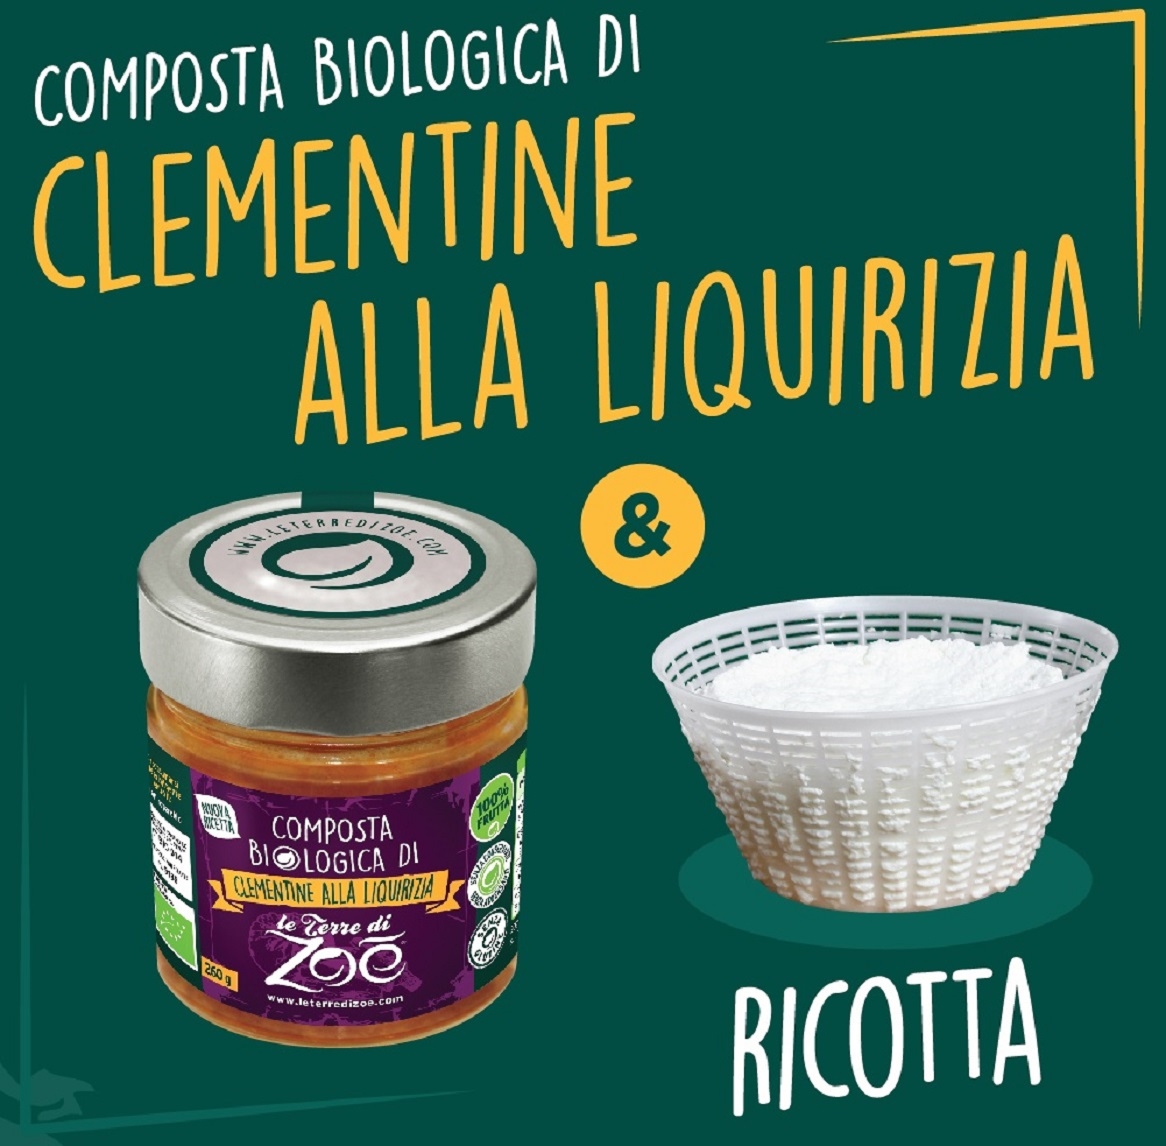 Italian Organic Compotes Clementine and Liquorice Le terre di zoè 4